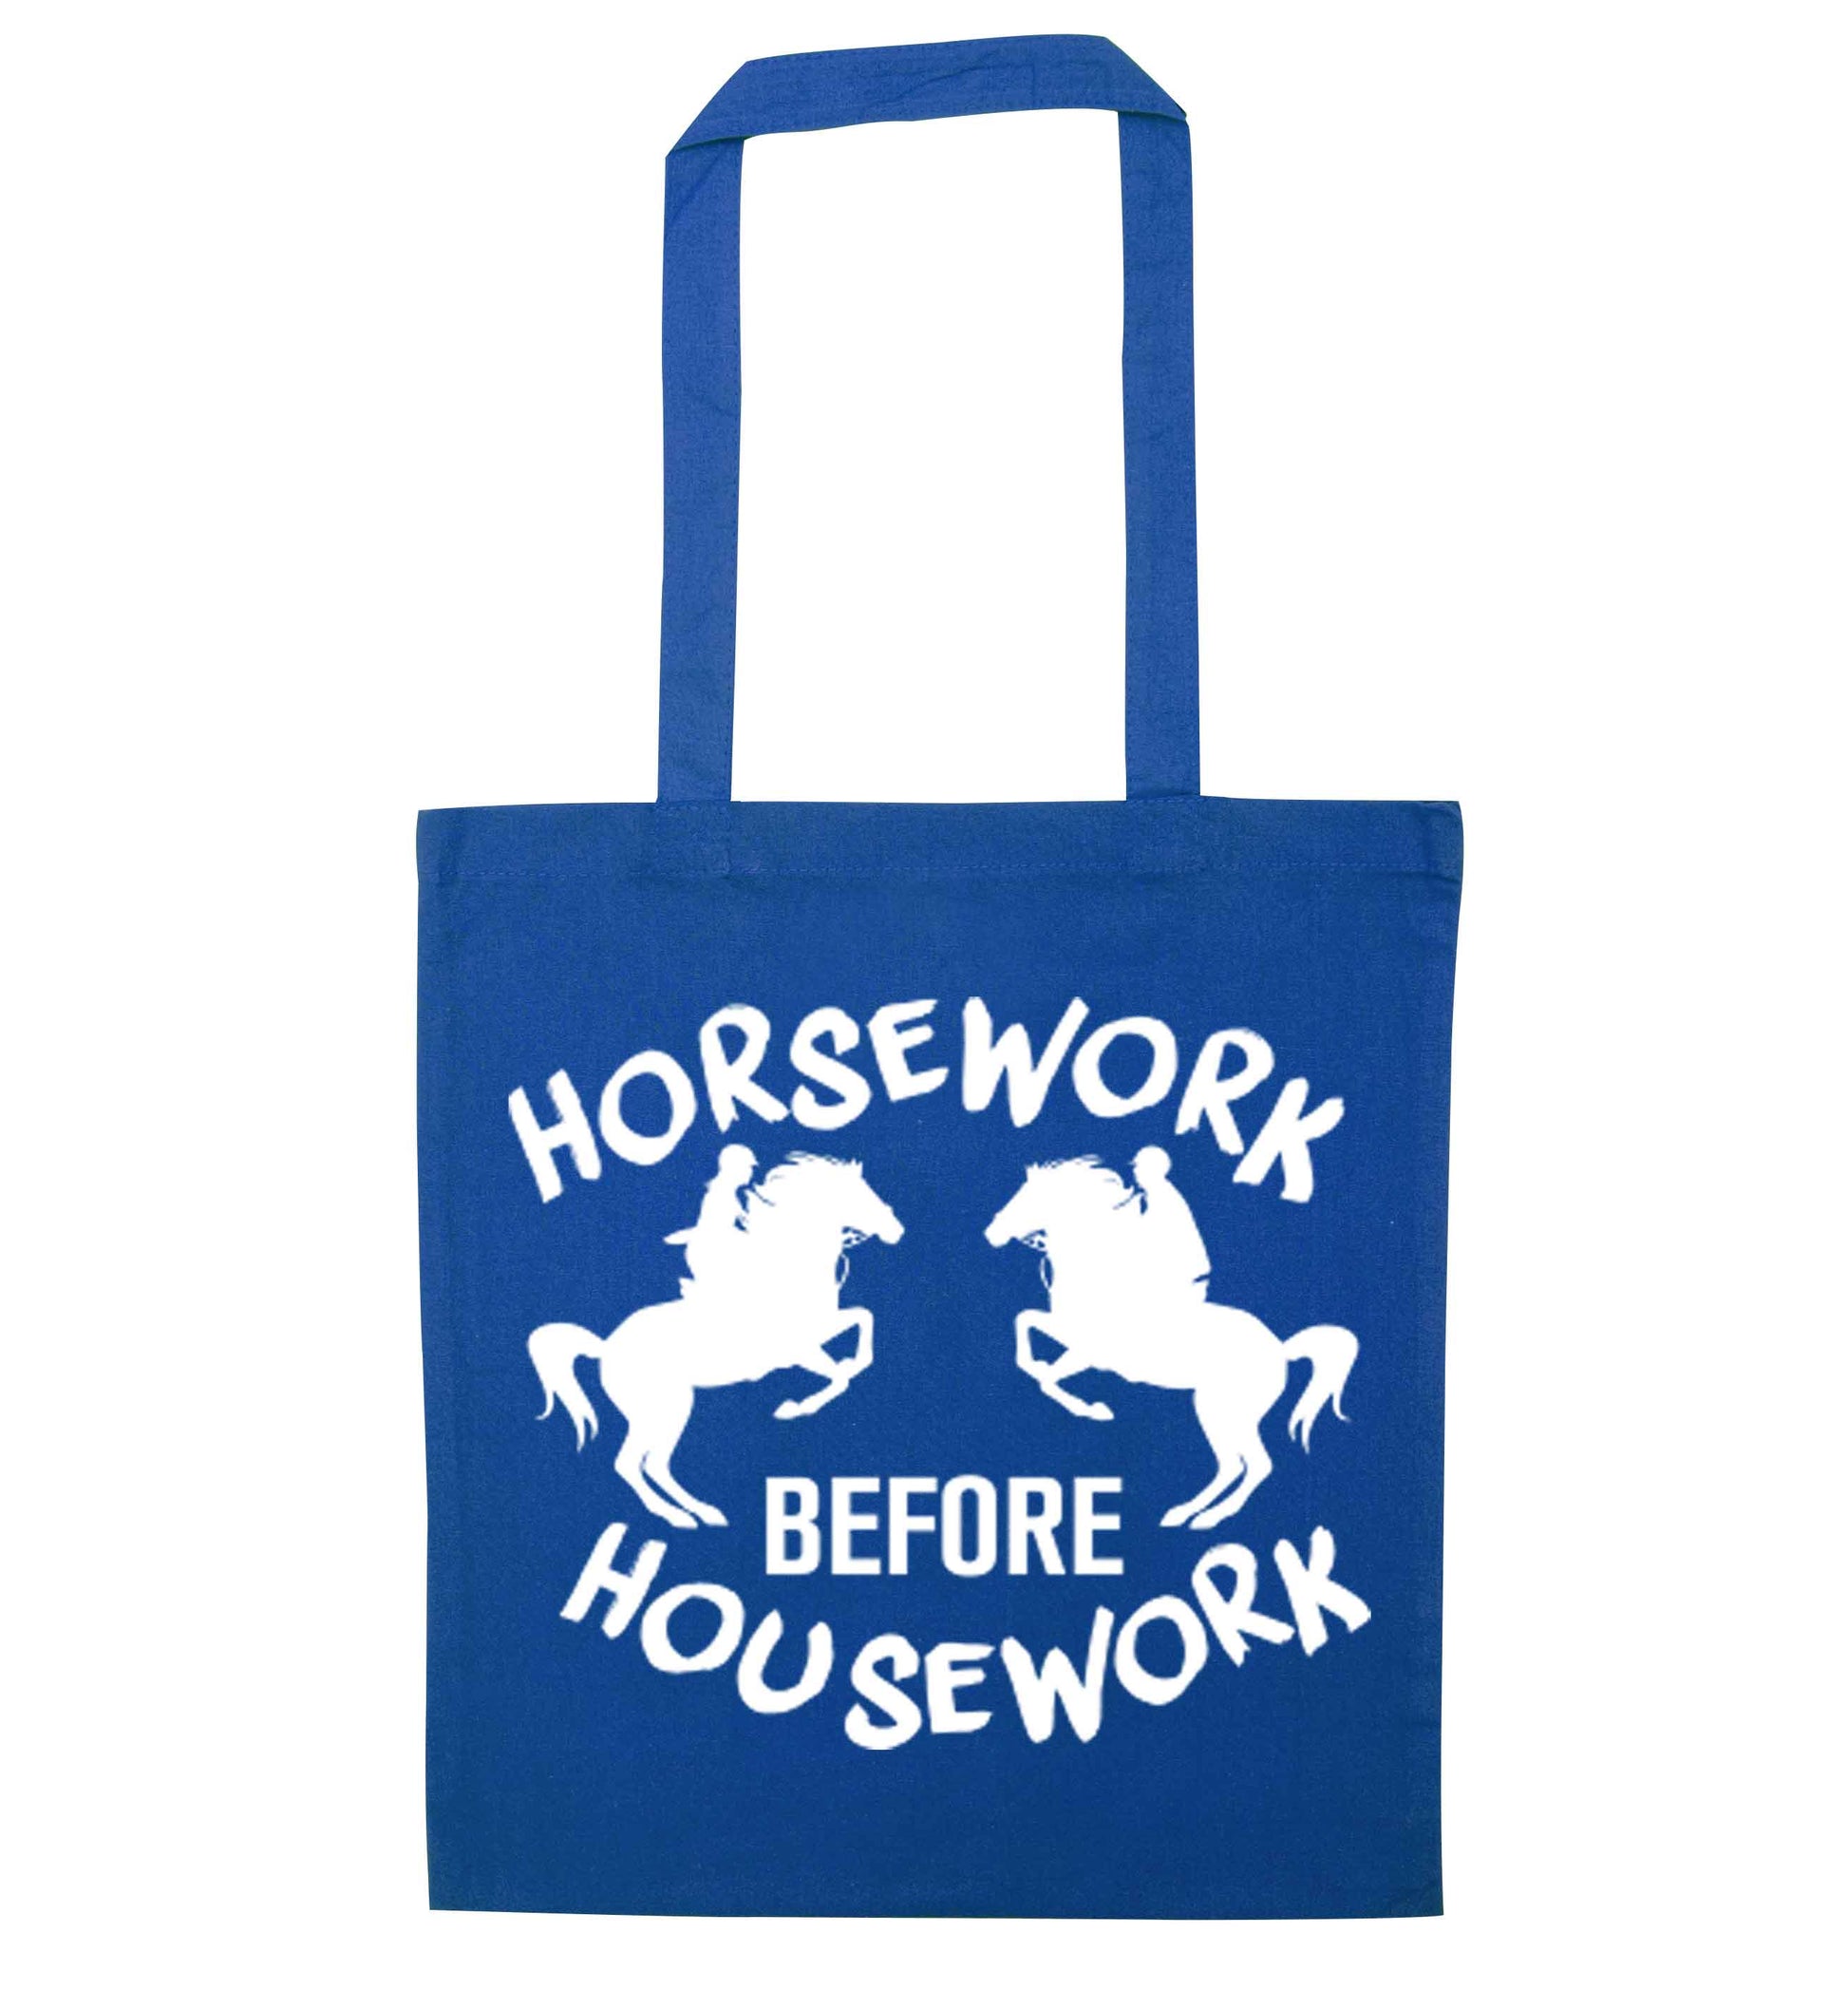 Horsework before housework blue tote bag